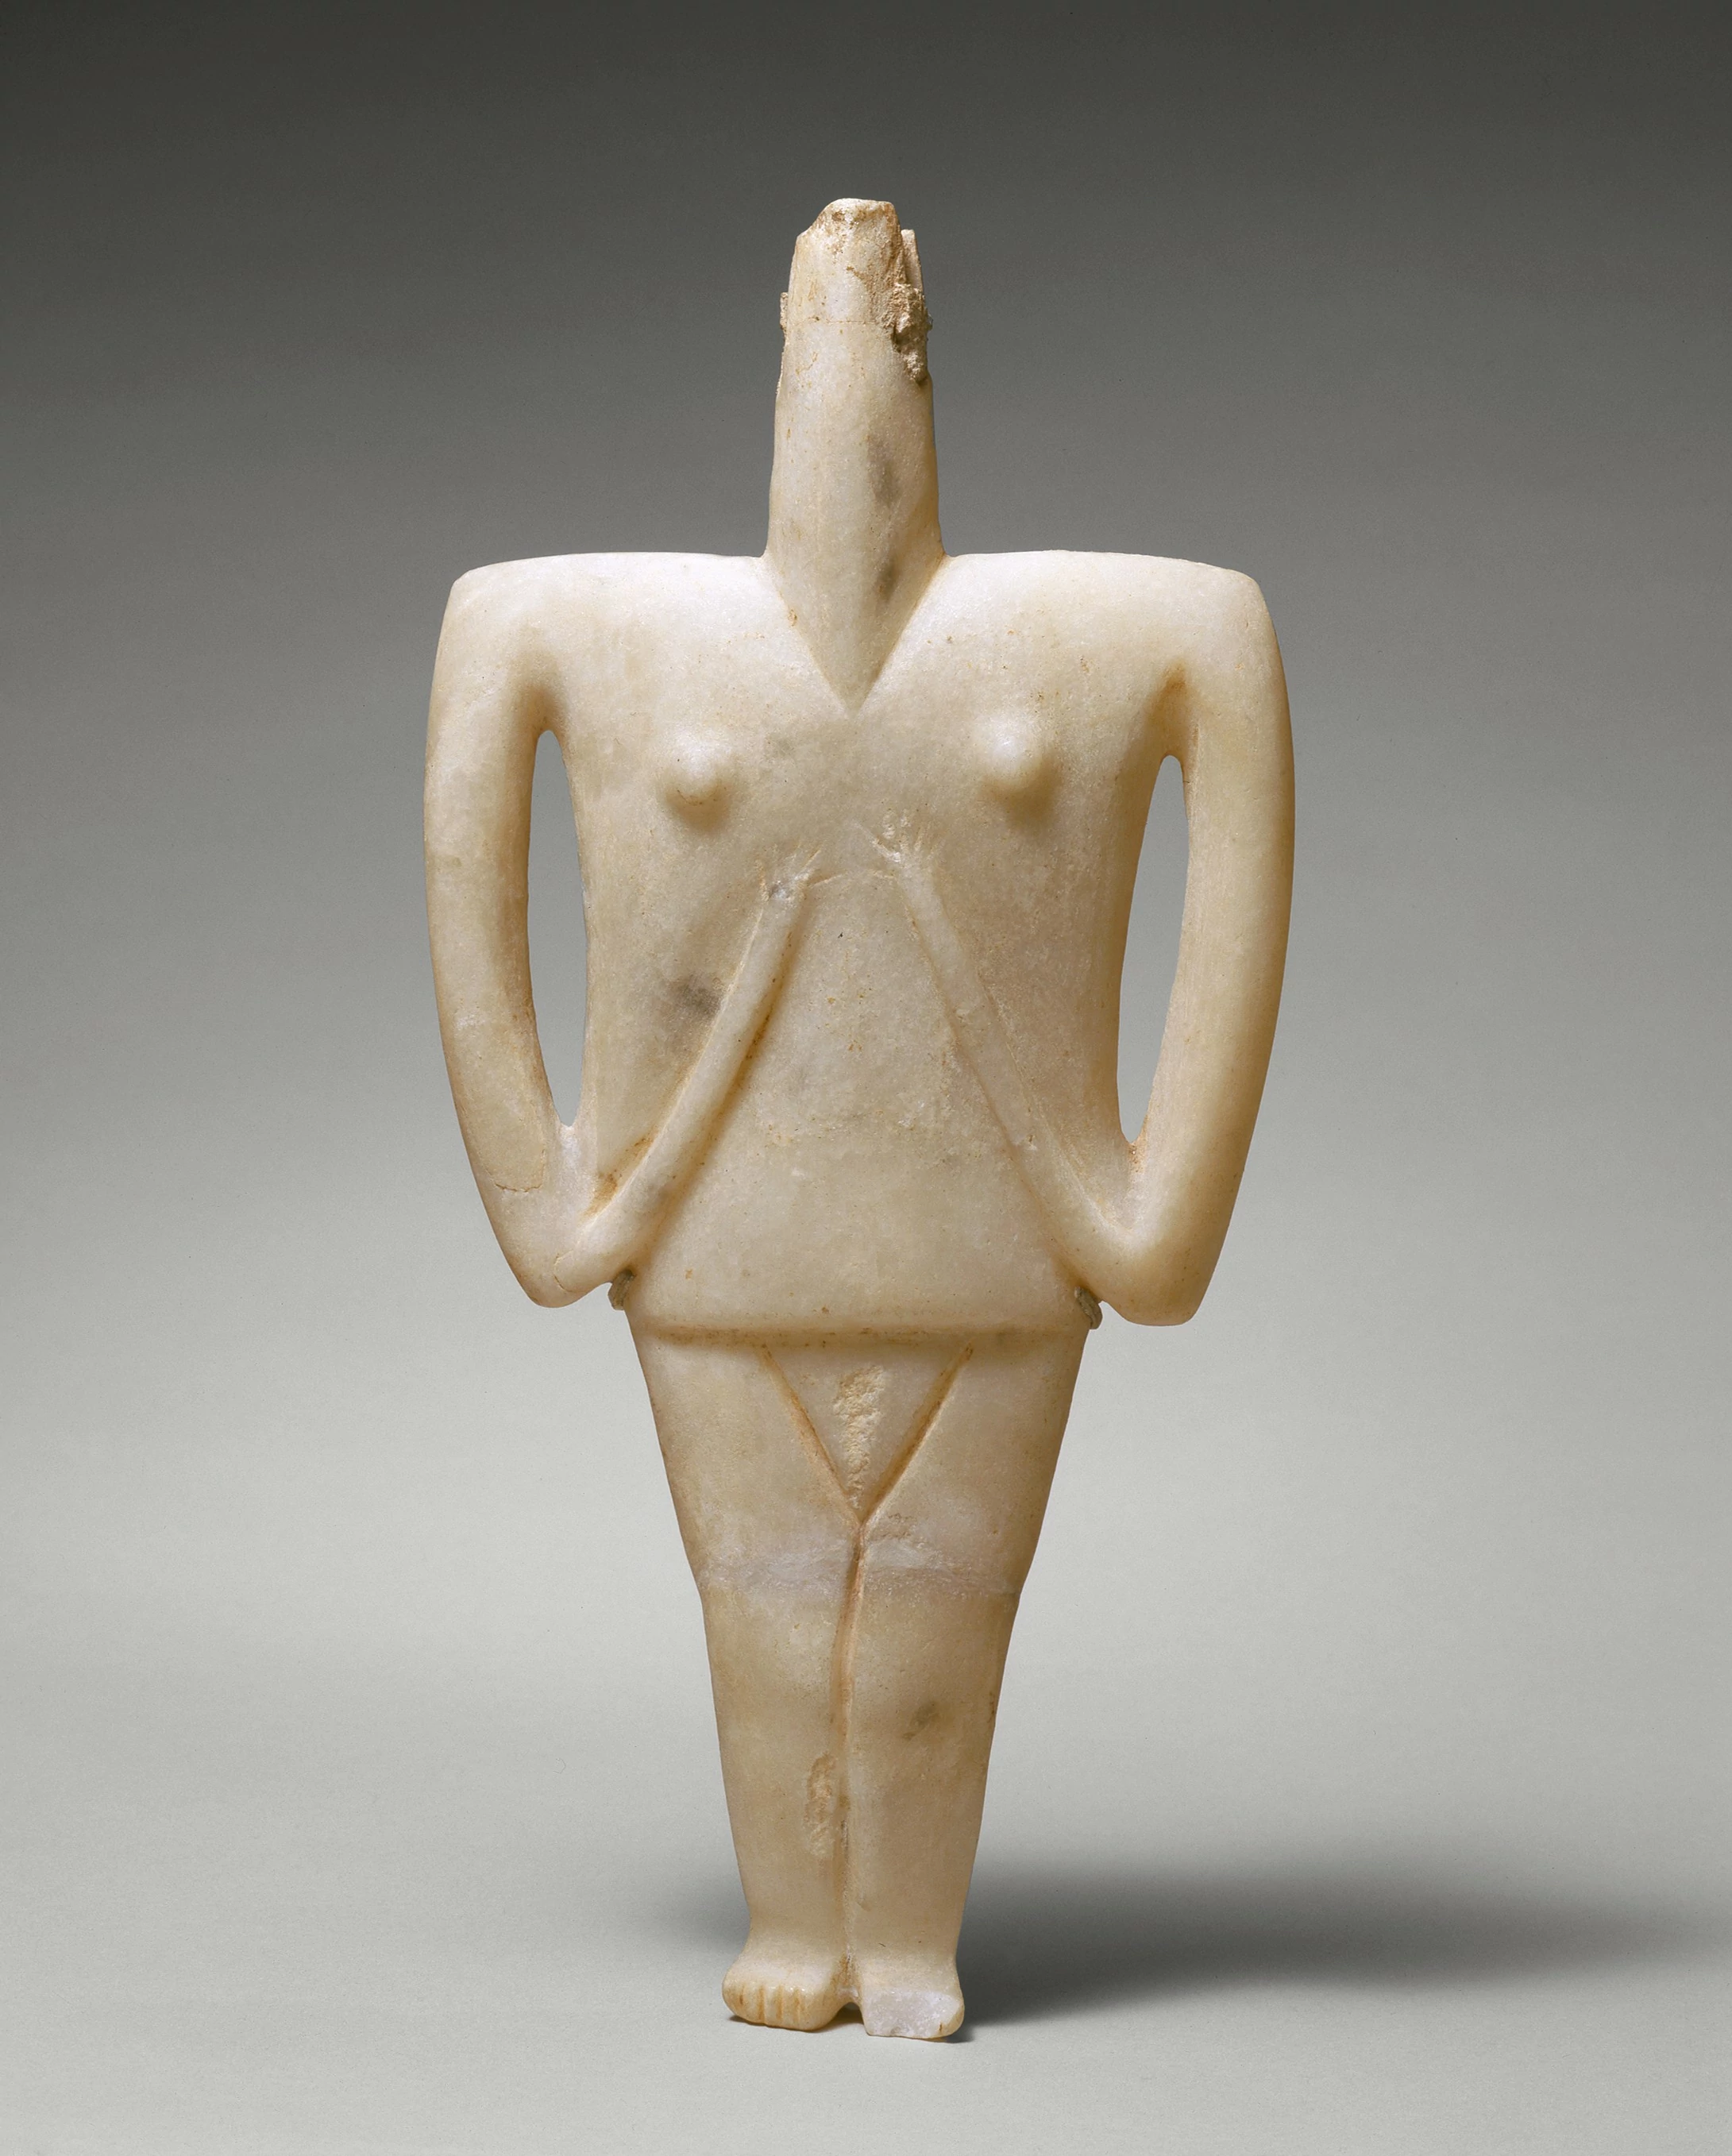 Cycladic female figure, Aegean Civilizations